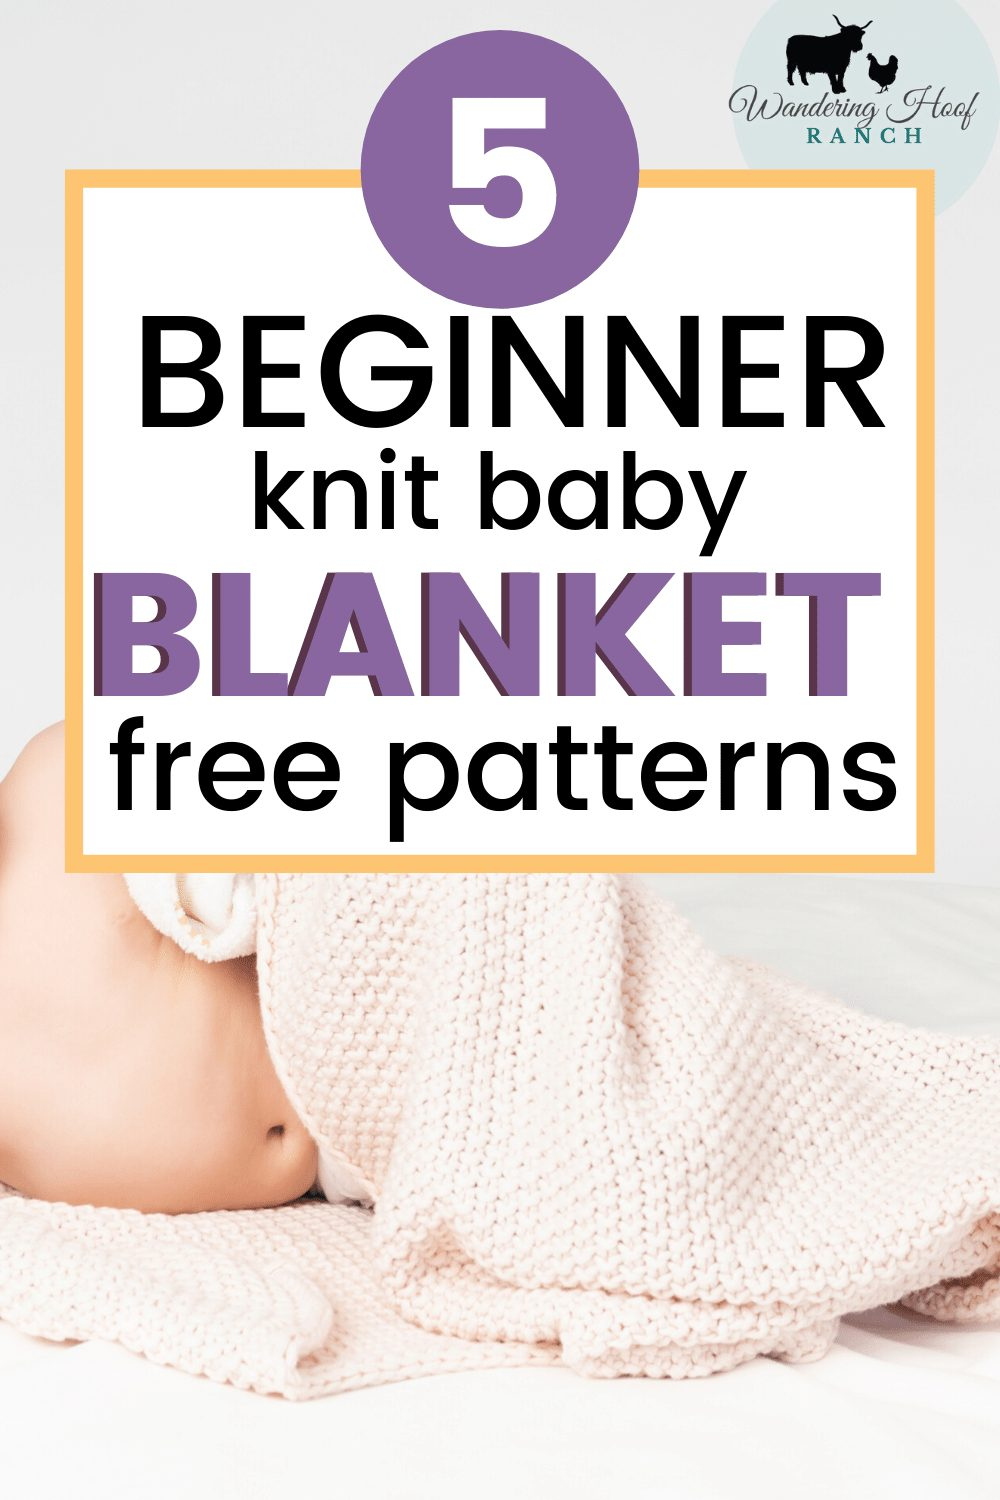 Free Baby Blanket Knitting Patterns regarding Free Printable Knitting Patterns for Baby Blankets